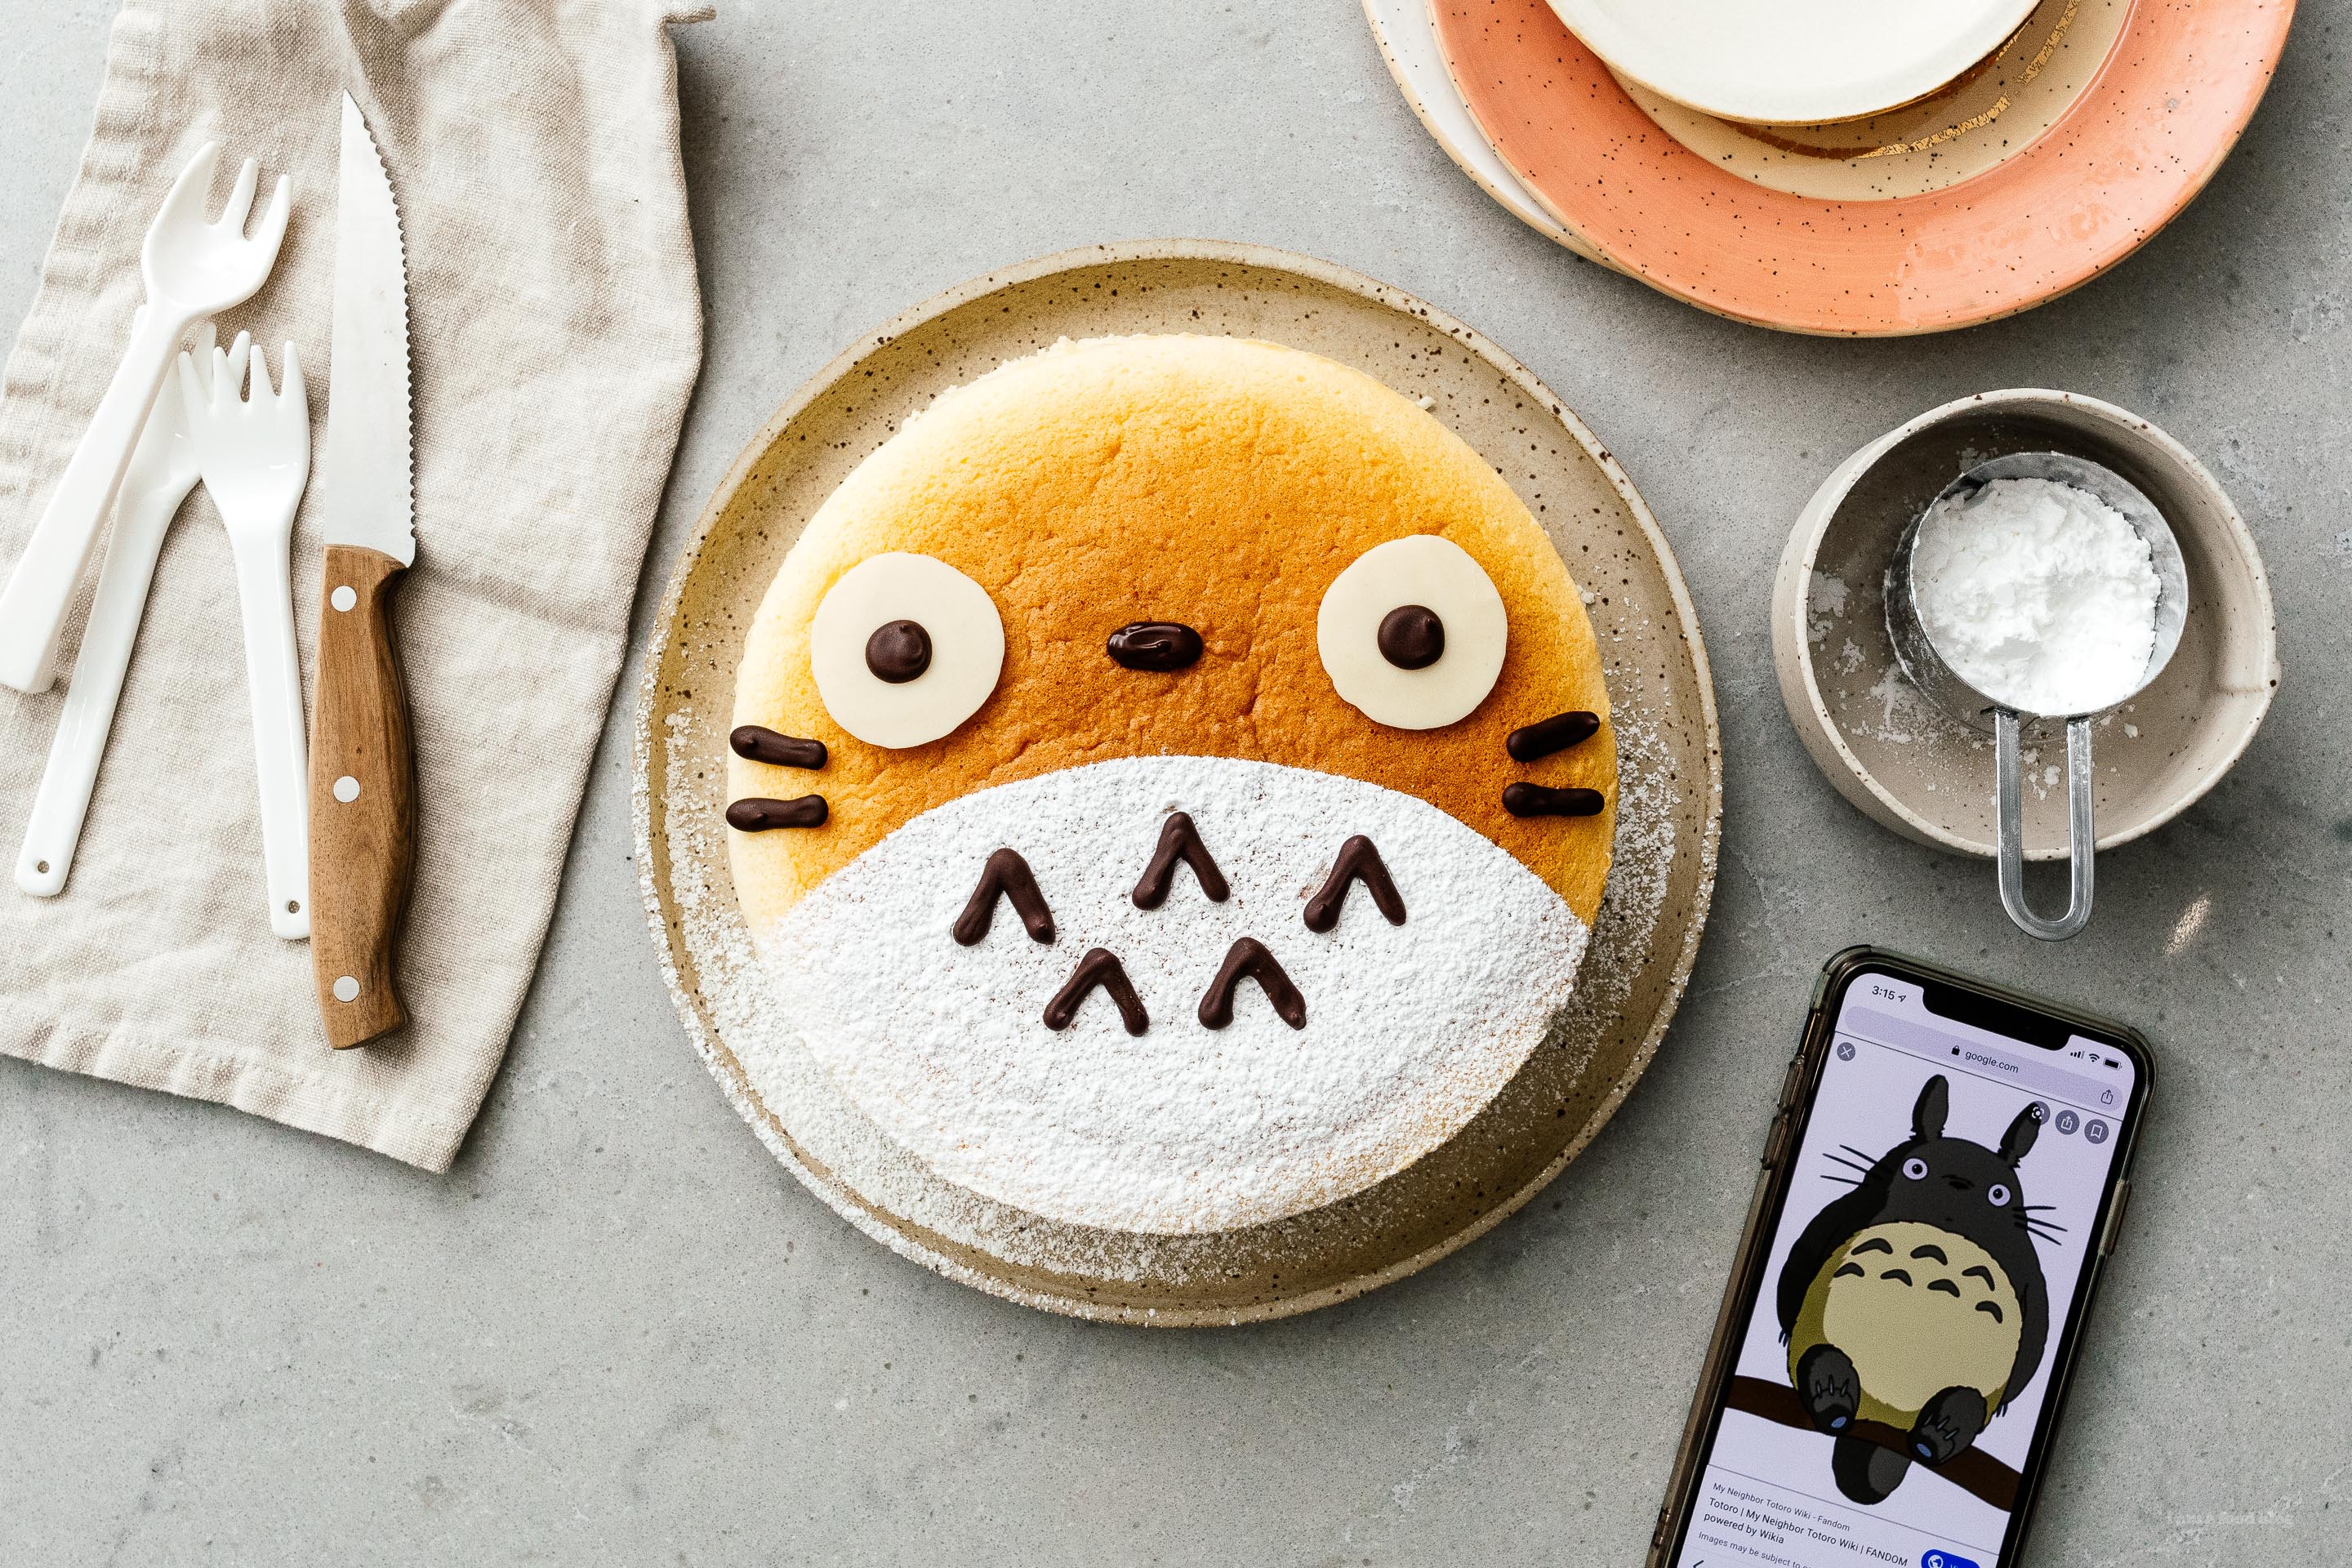 Isang Super Cute, Chewy Totoro Cheesecake - Isang malambot, chewy na cheesecake na kasing liwanag ng hangin na may kaunting tamis. #cheesecake #japanesecheesecake #fluffycheesecake #totorocake #totorocheesecake #totorofood #kawaiifood